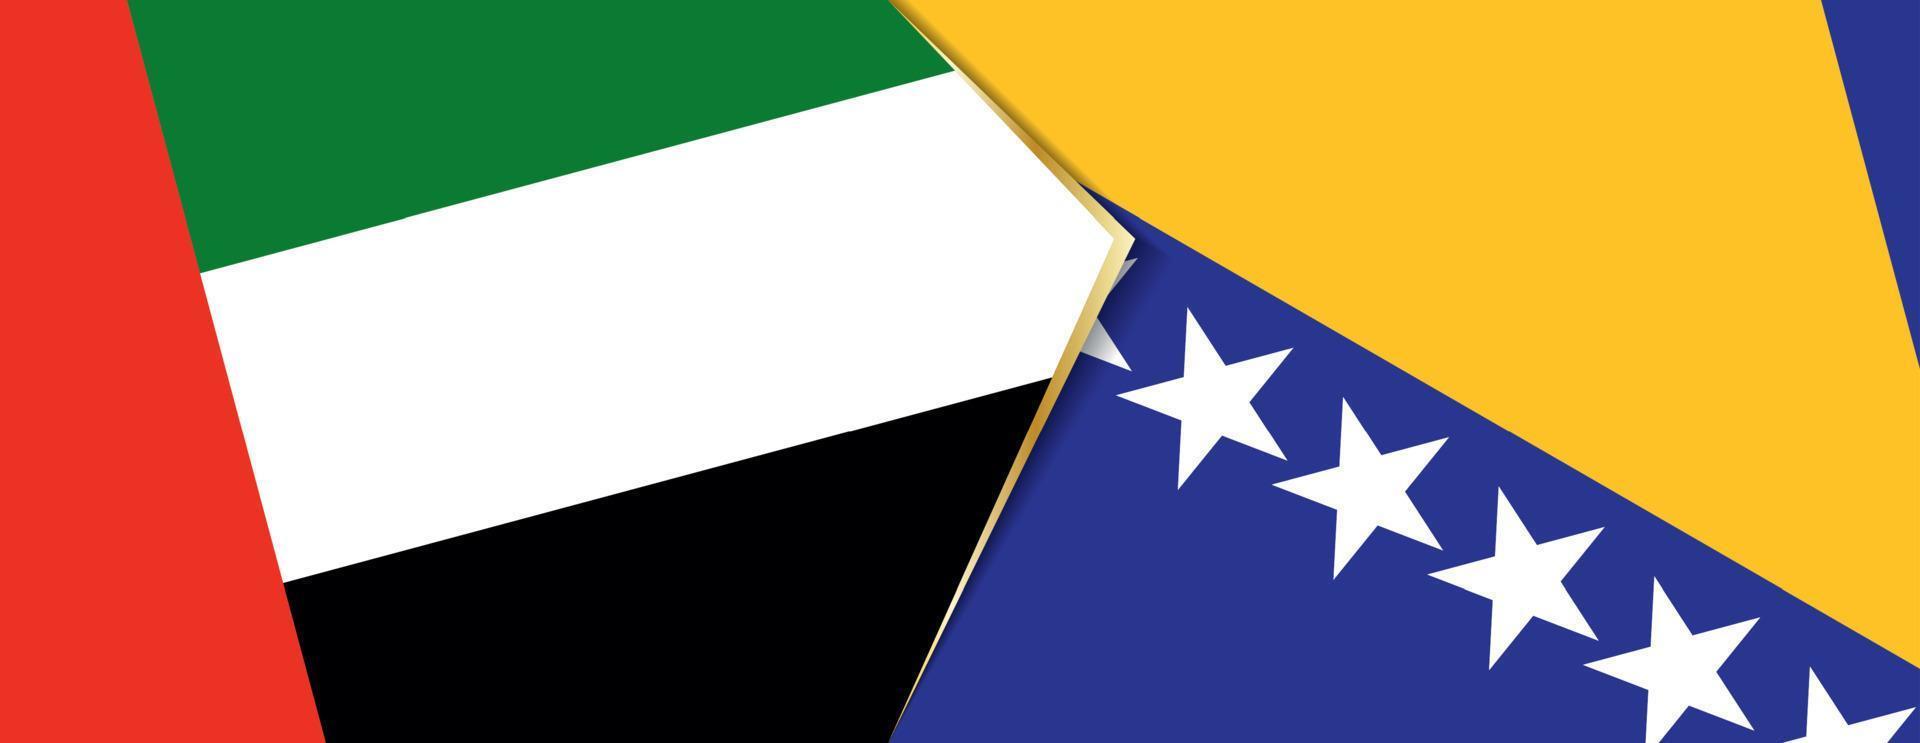 förenad arab emirates och bosnien och herzegovina flaggor, två vektor flaggor.